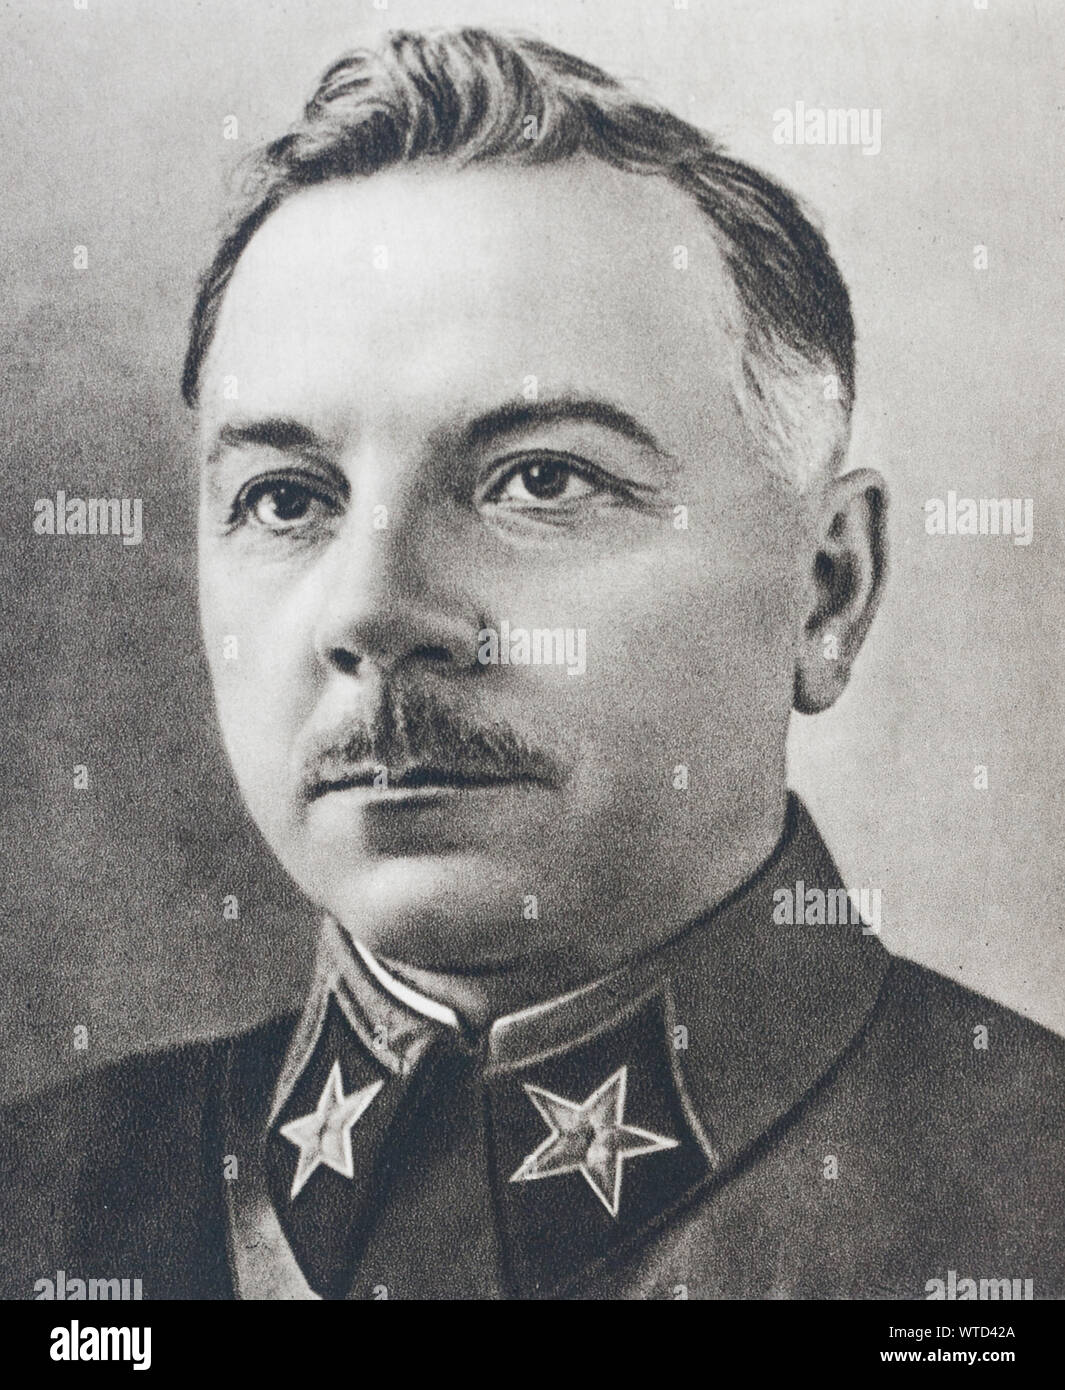 Klim Woroschilow (1881 - 1969), war ein prominenter sowjetischer Offizier und Politiker während der Stalin-zeit. Er war einer der fünf ursprünglichen Marshals Stockfoto